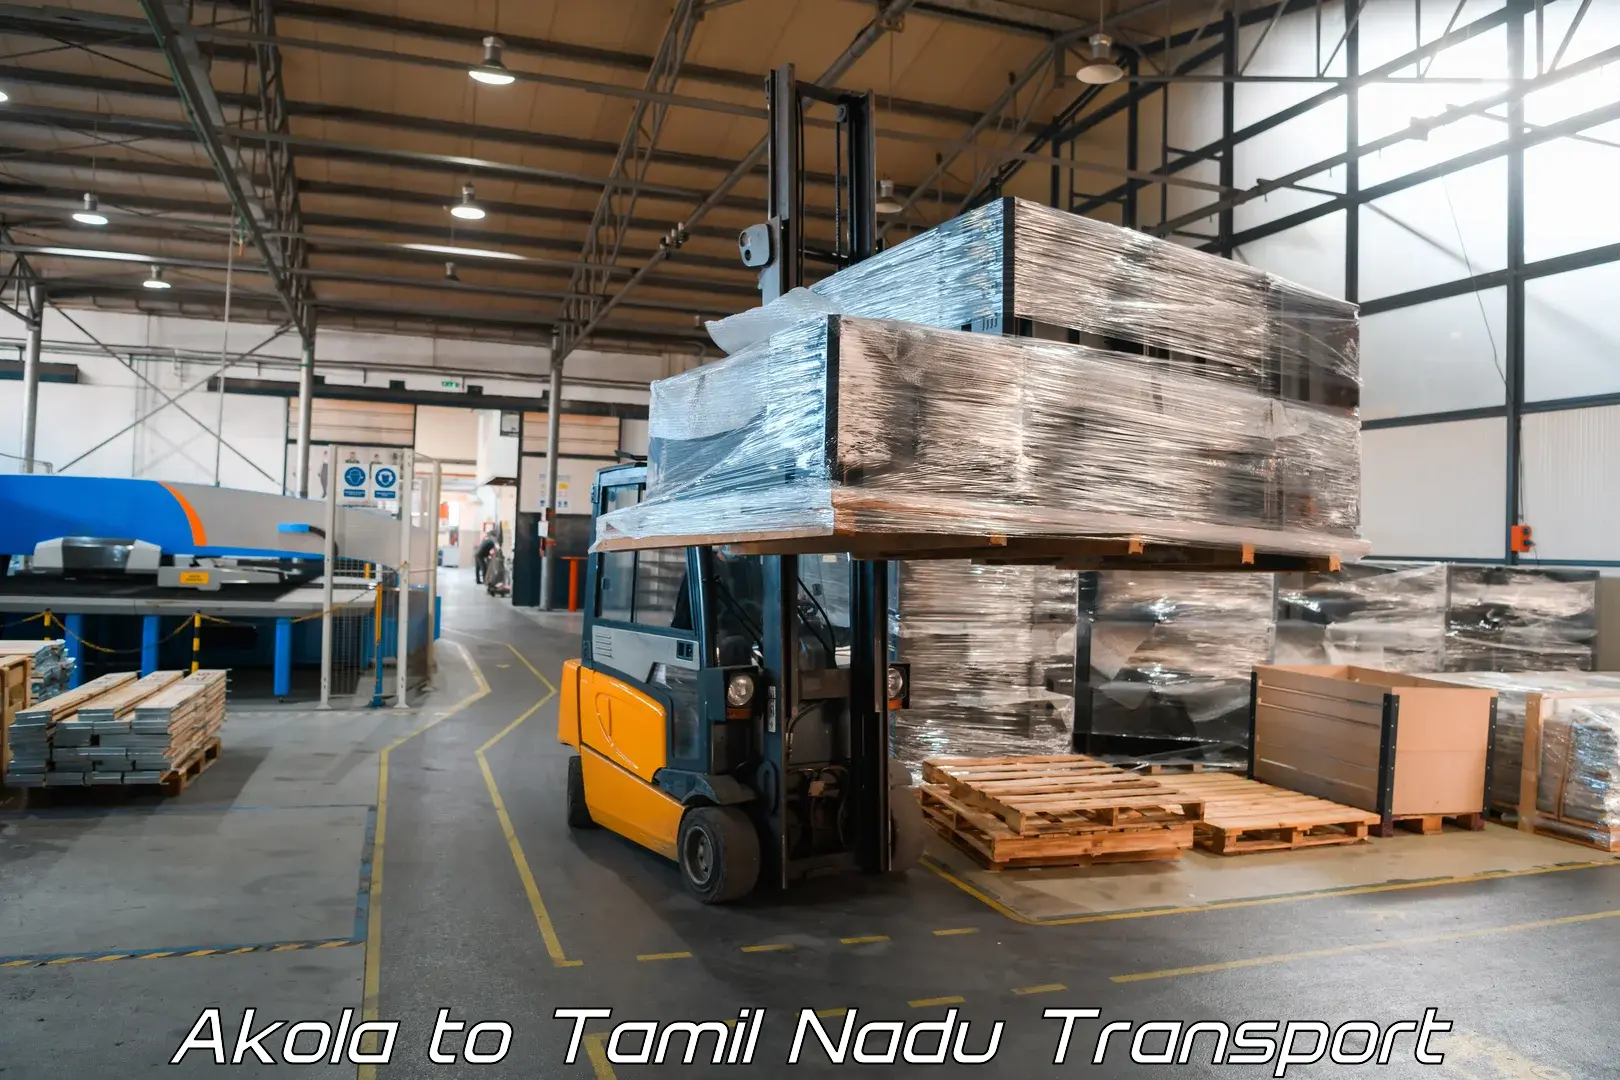 Online transport booking in Akola to Vickramasingapuram